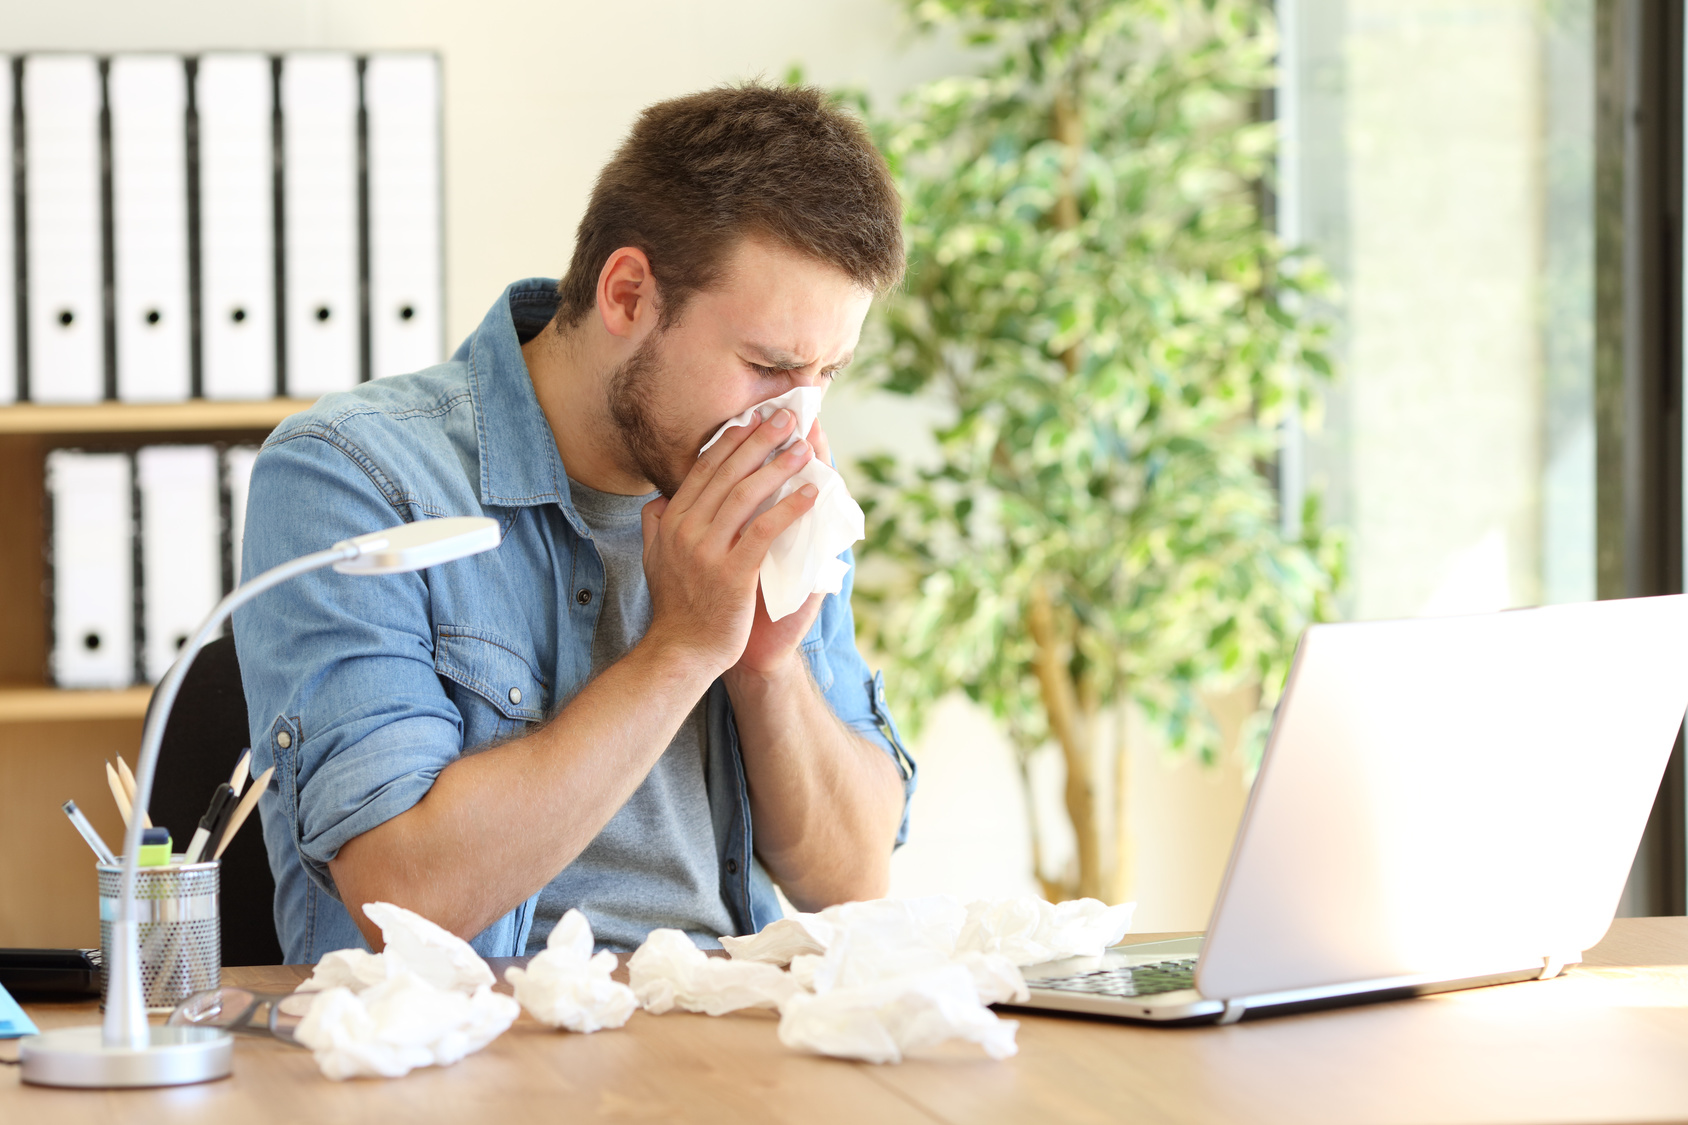 Ein erkälteter Mann sitzt im Büro vor einem Laptop und putzt sich die Nase. Neben ihm liegen viele benutzte Taschentücher.